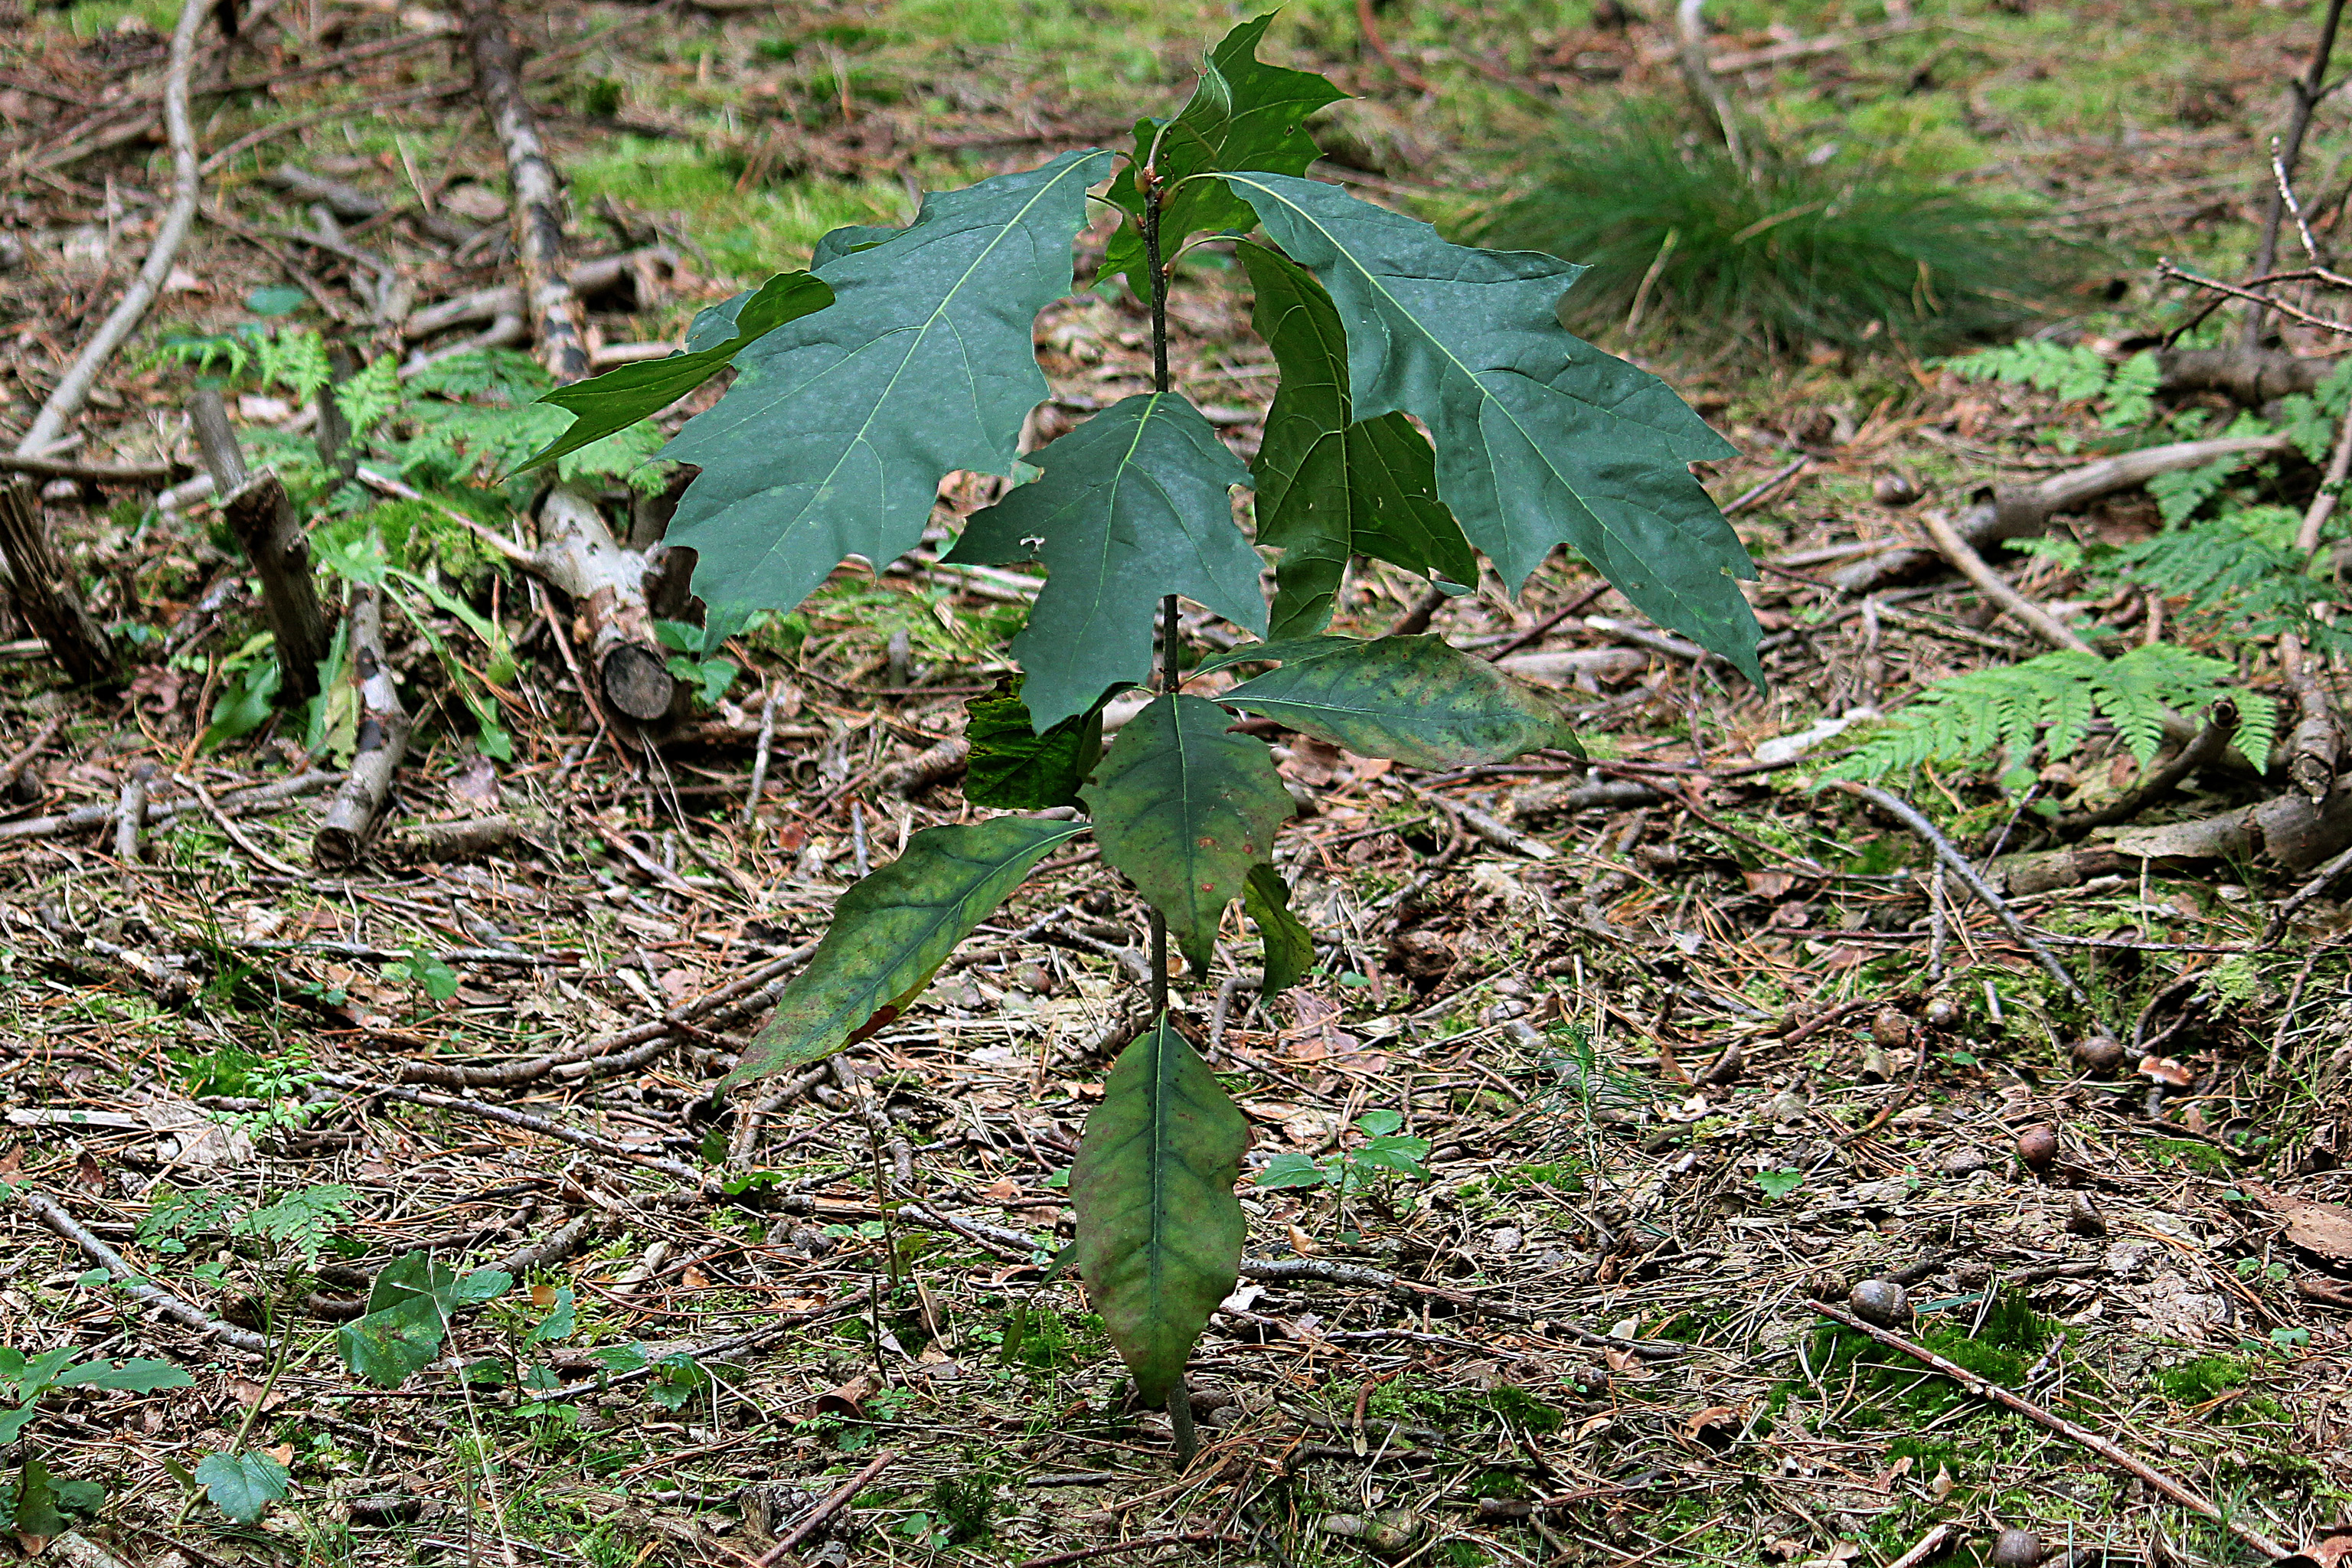 Quercus rubra L.